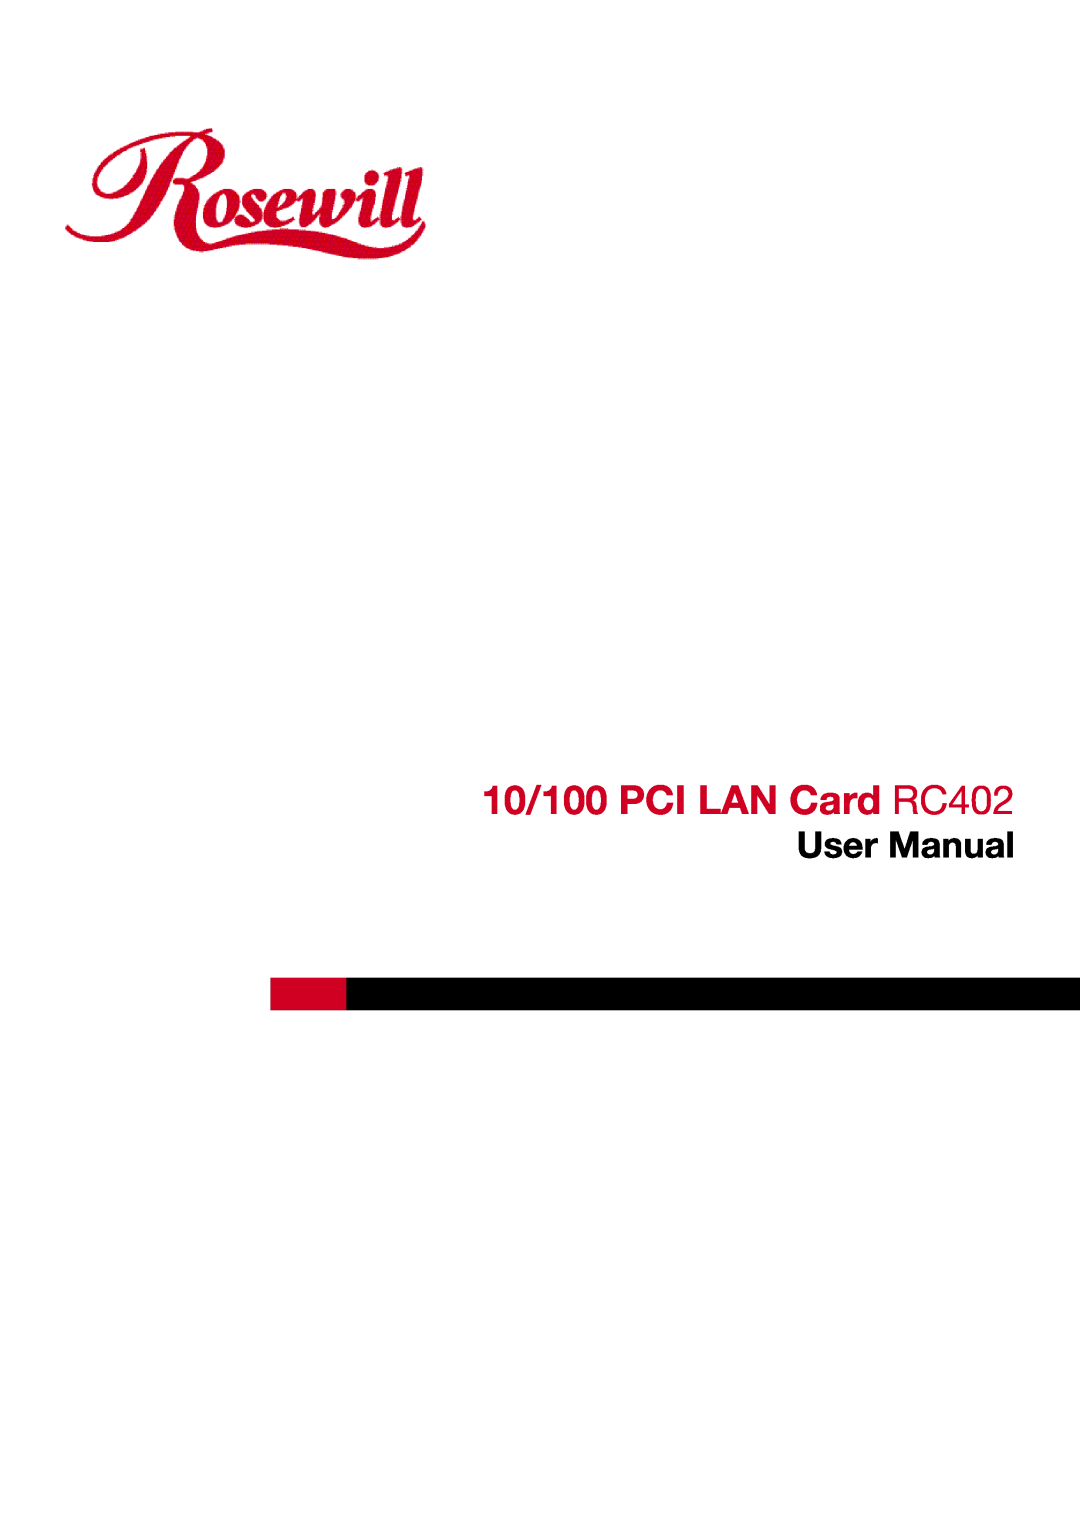 Rosewill RC-402 user manual 10/100 PCI LAN Card RC402, User Manual 